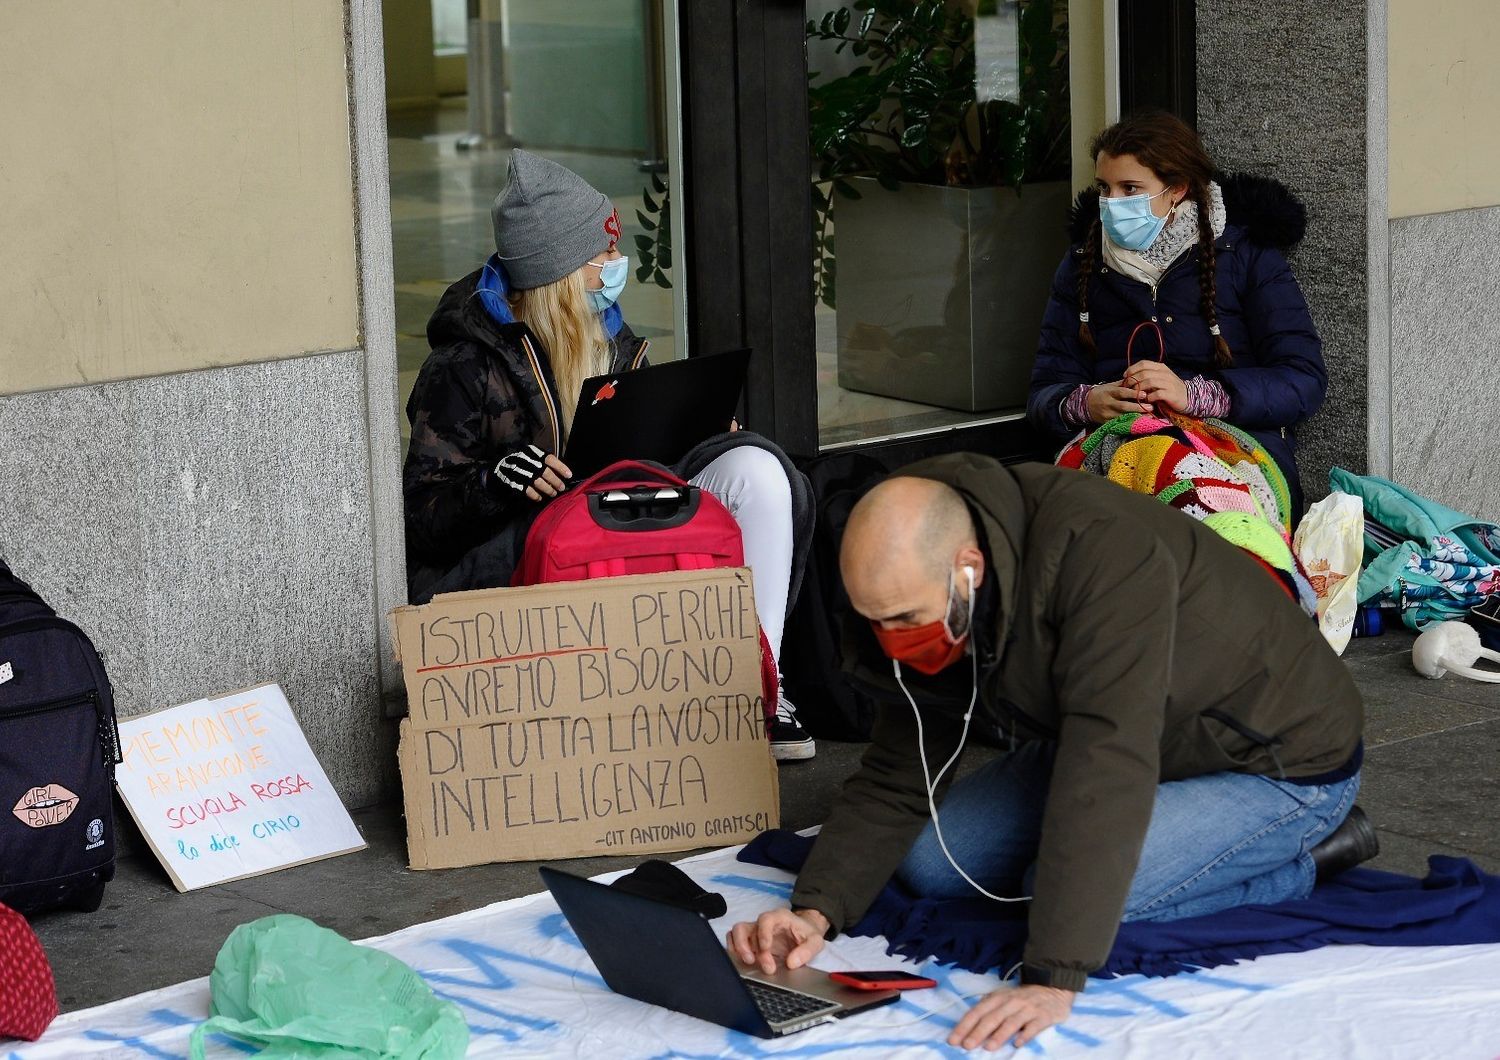 Protesta contro la didattica a distanza a Torino